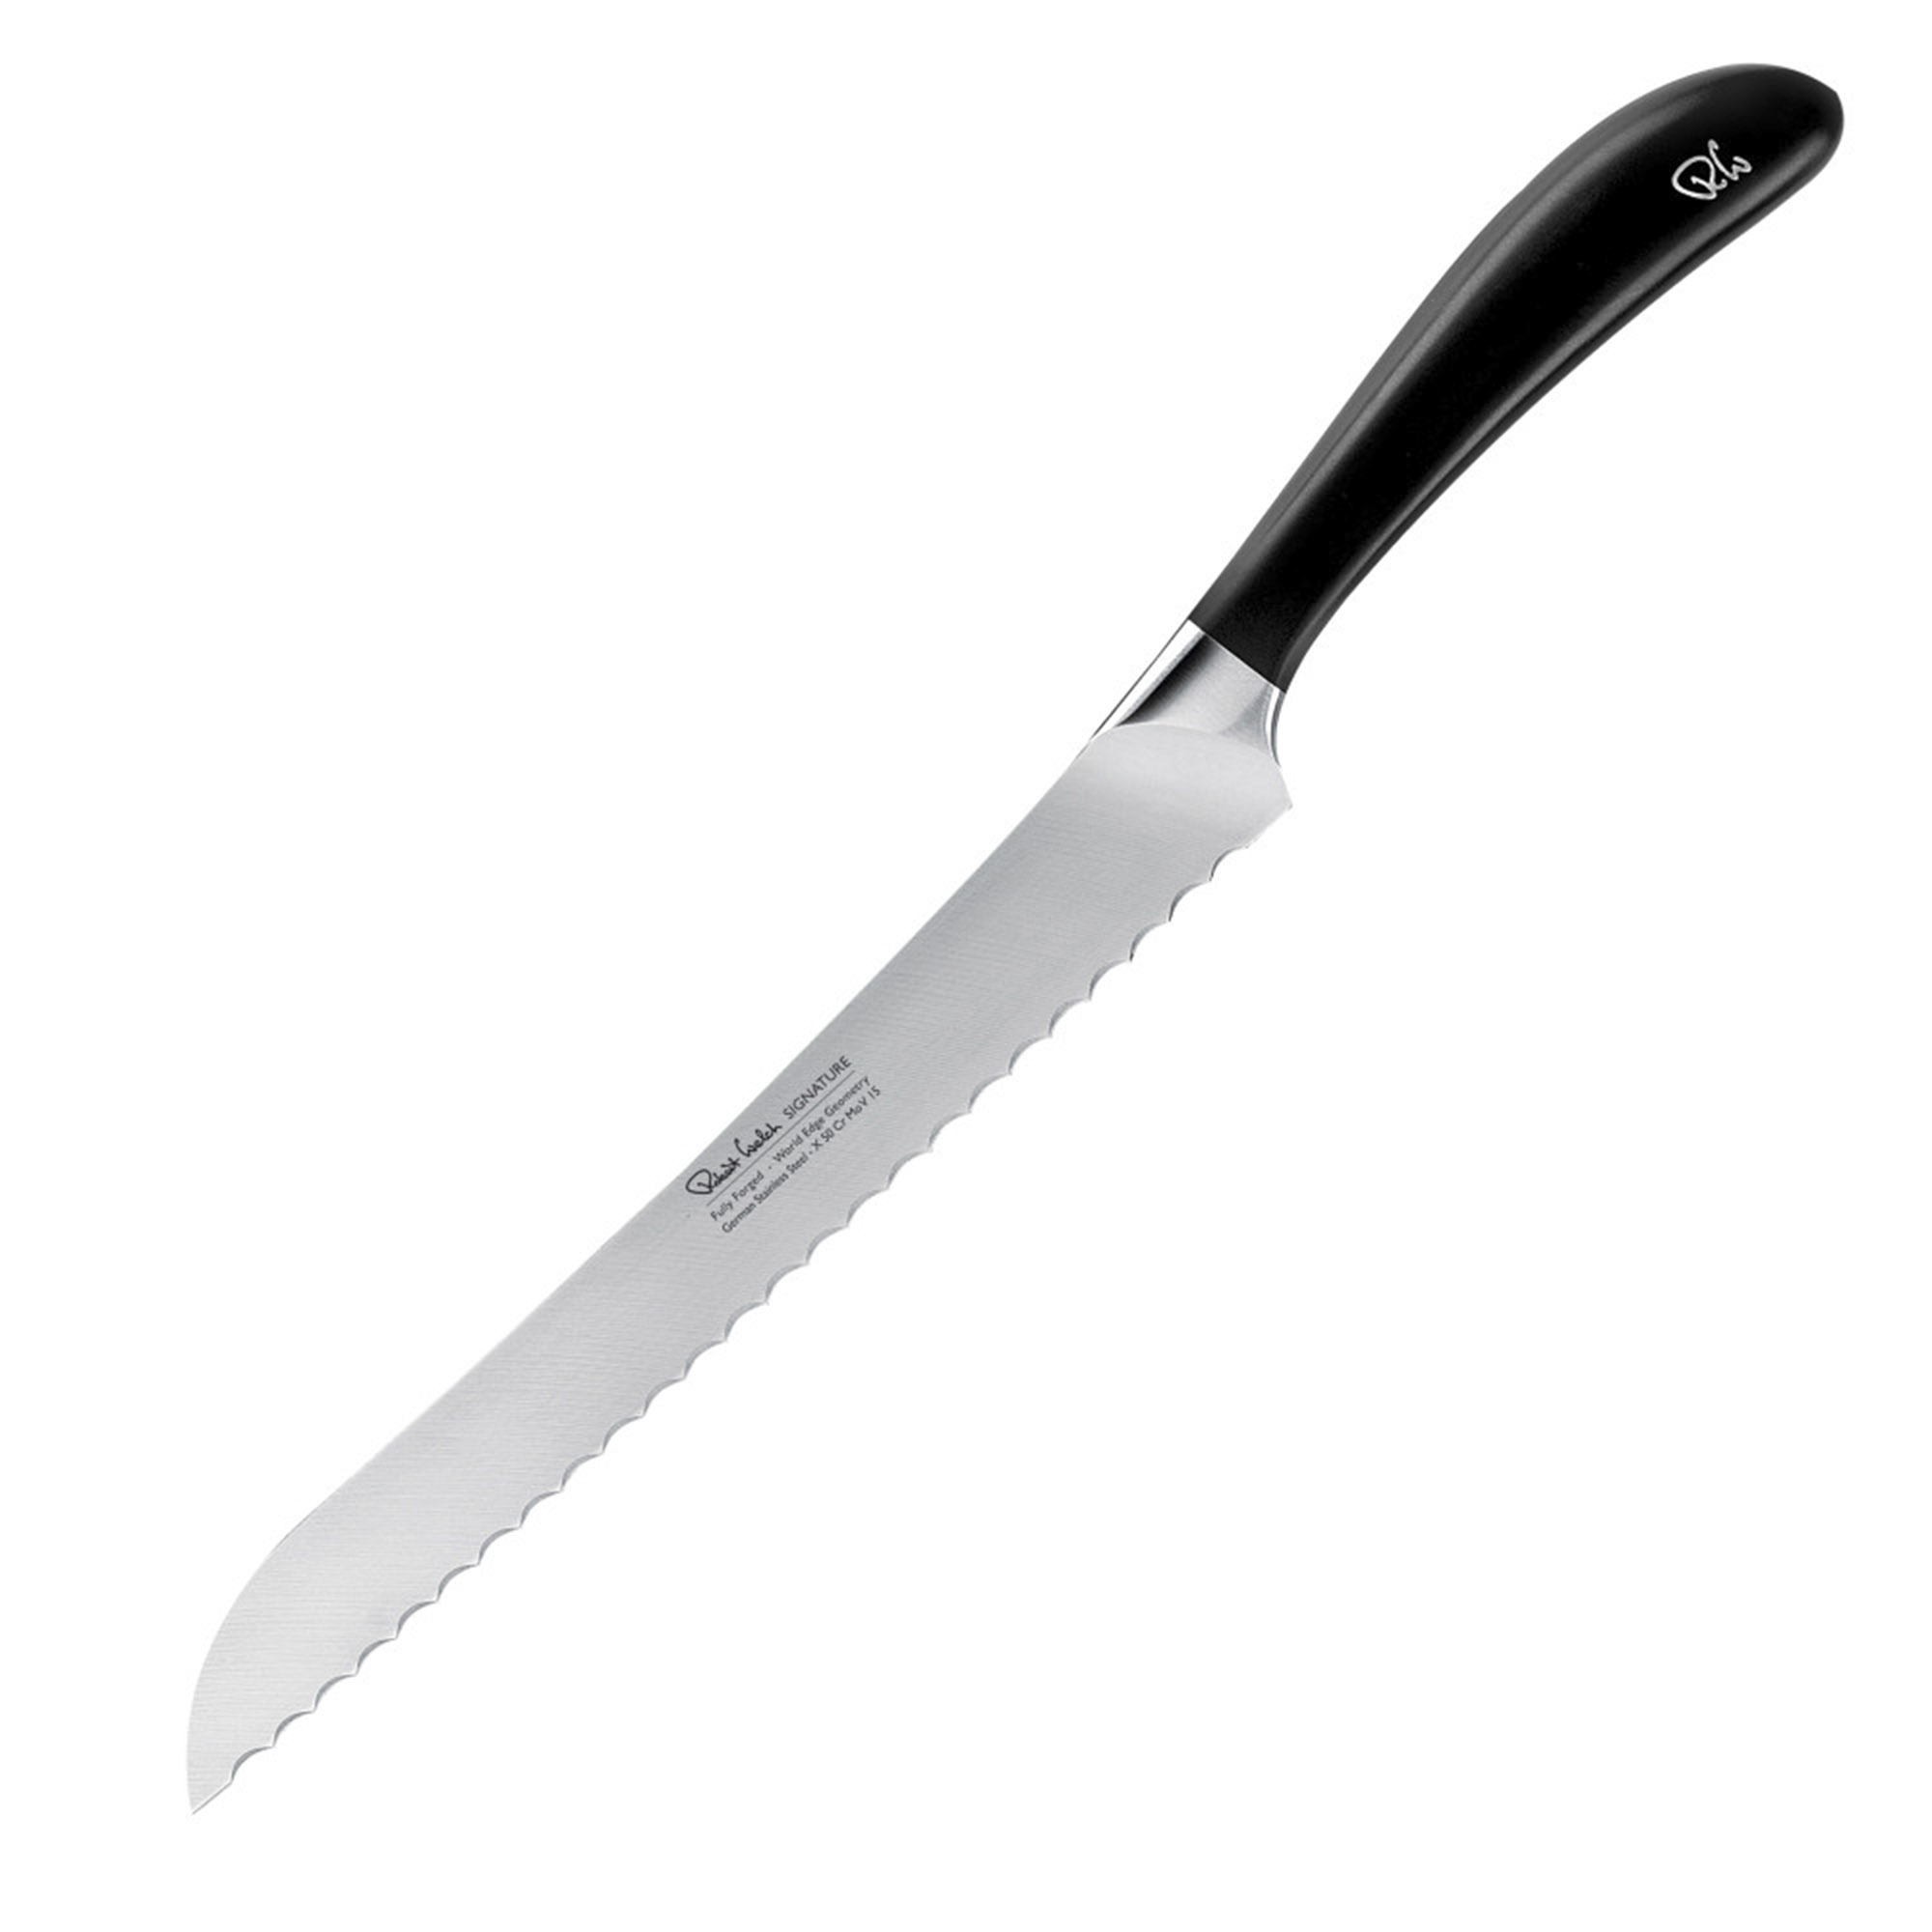 нож для хлеба signature sigsa2001v 220 мм Нож для хлеба Robert Welch Signature 22 см